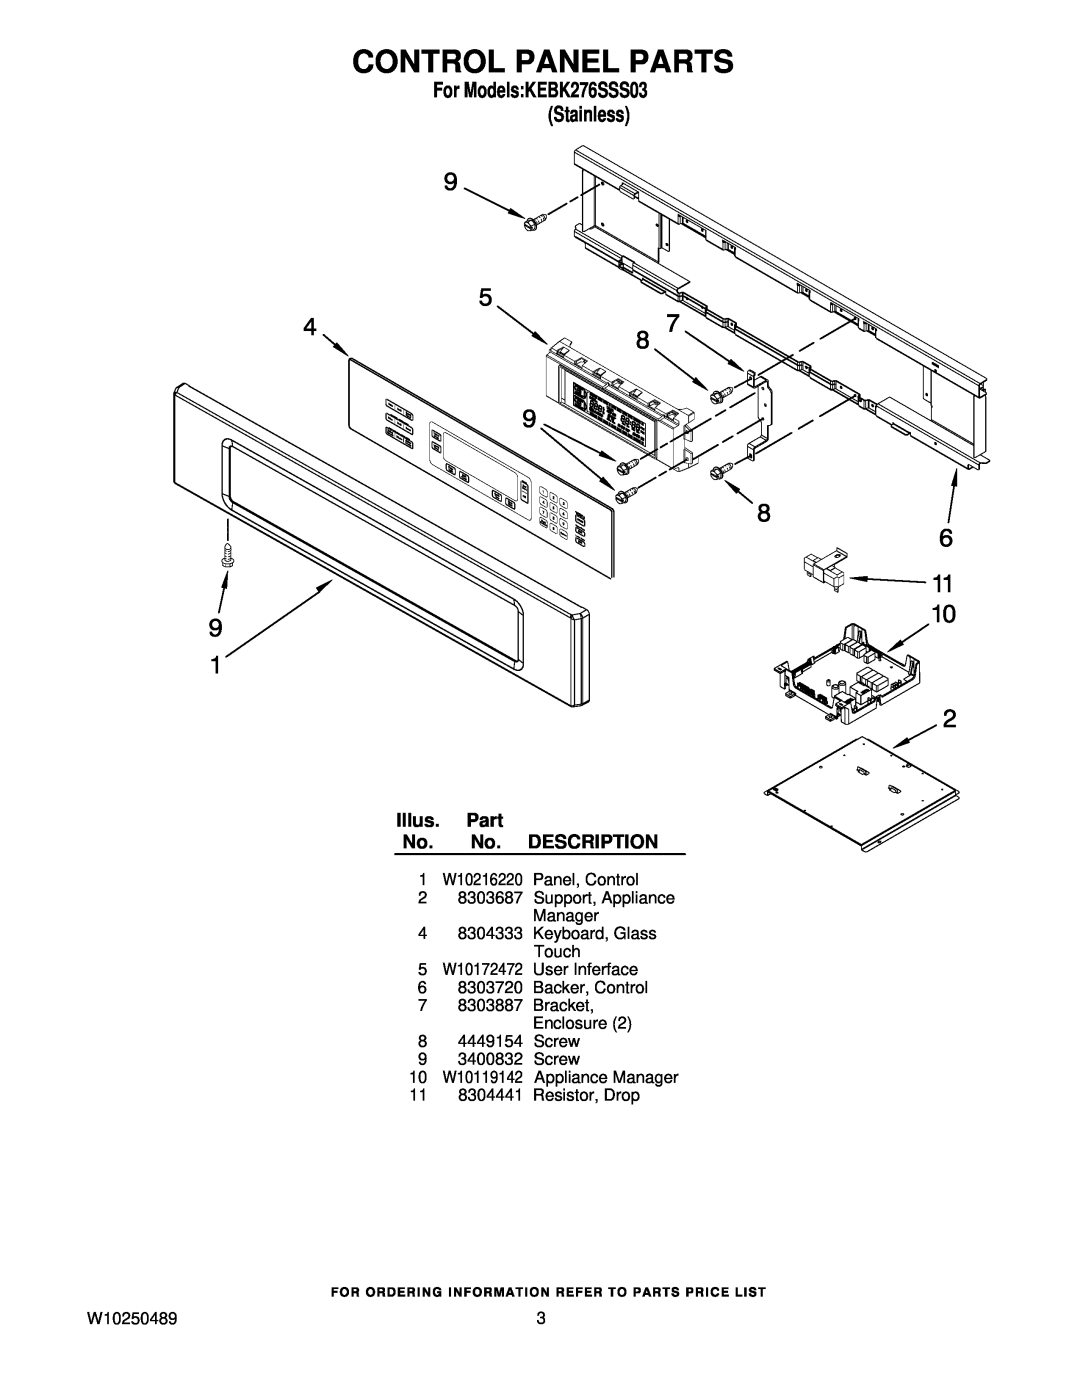 KitchenAid KEBK276SSS03 manual Control Panel Parts, Illus. Part No. No. DESCRIPTION, 11 8304441 Resistor, Drop, W10250489 